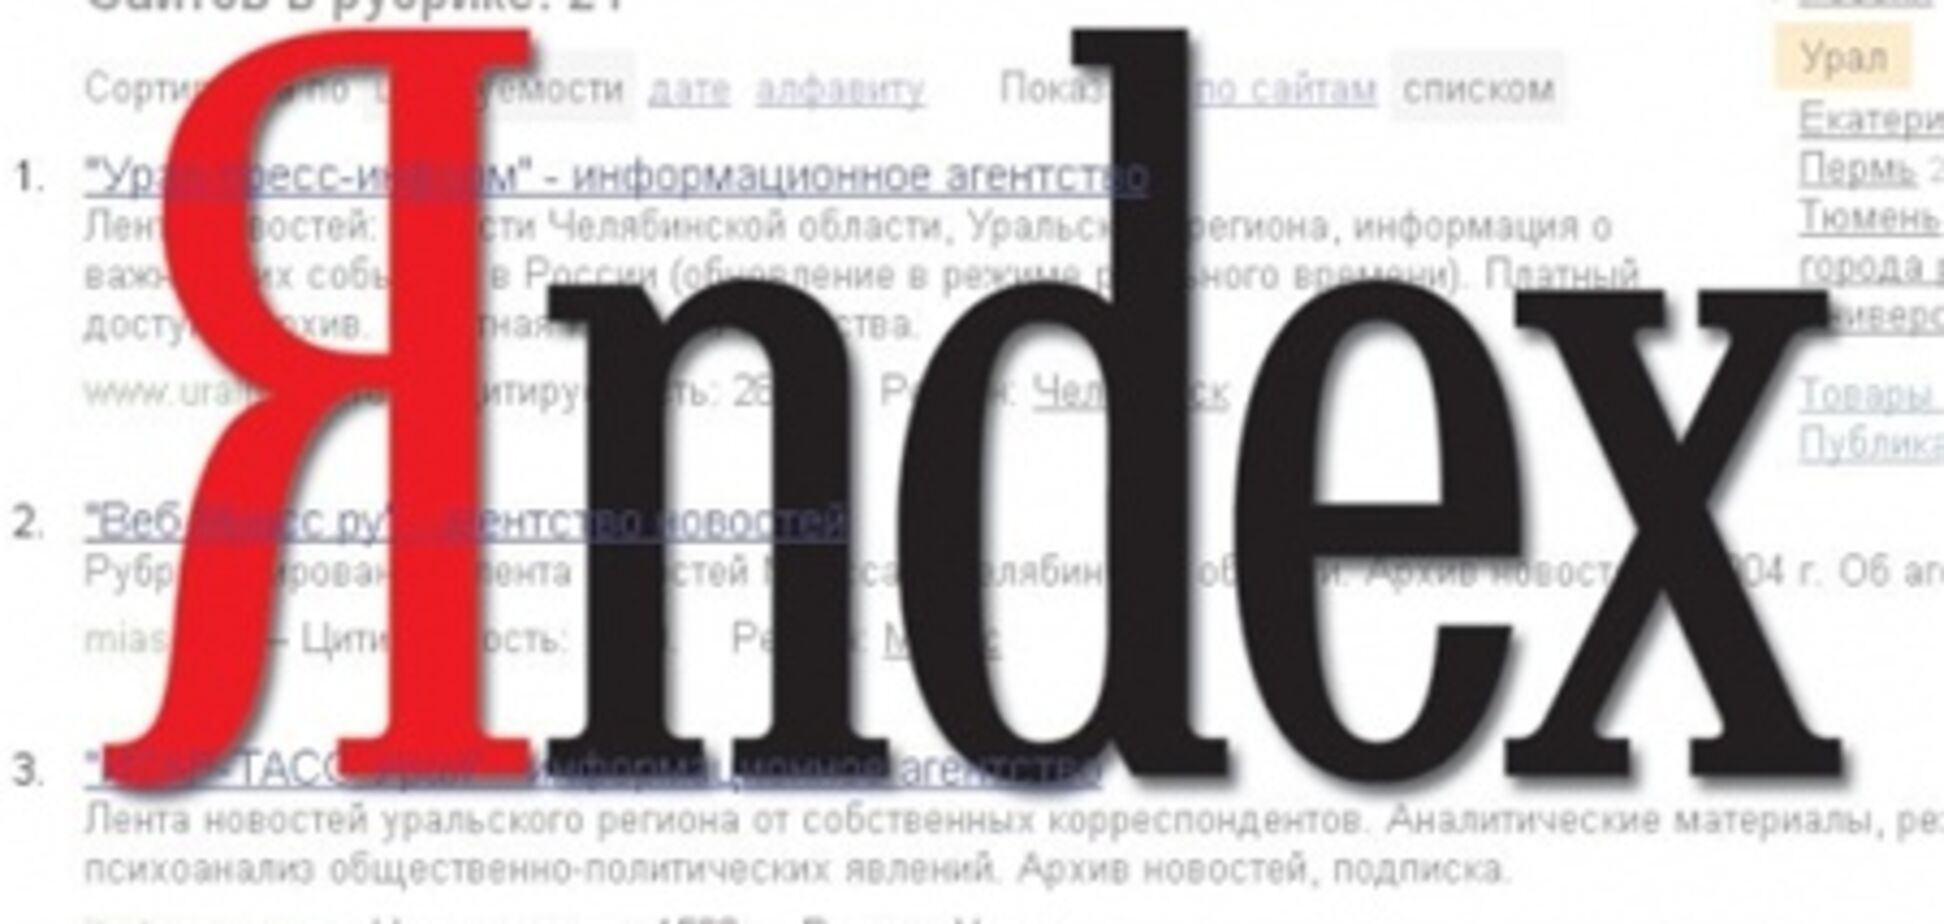 Российские писатели просят помощи у Яндекса в борьбе с пиратством